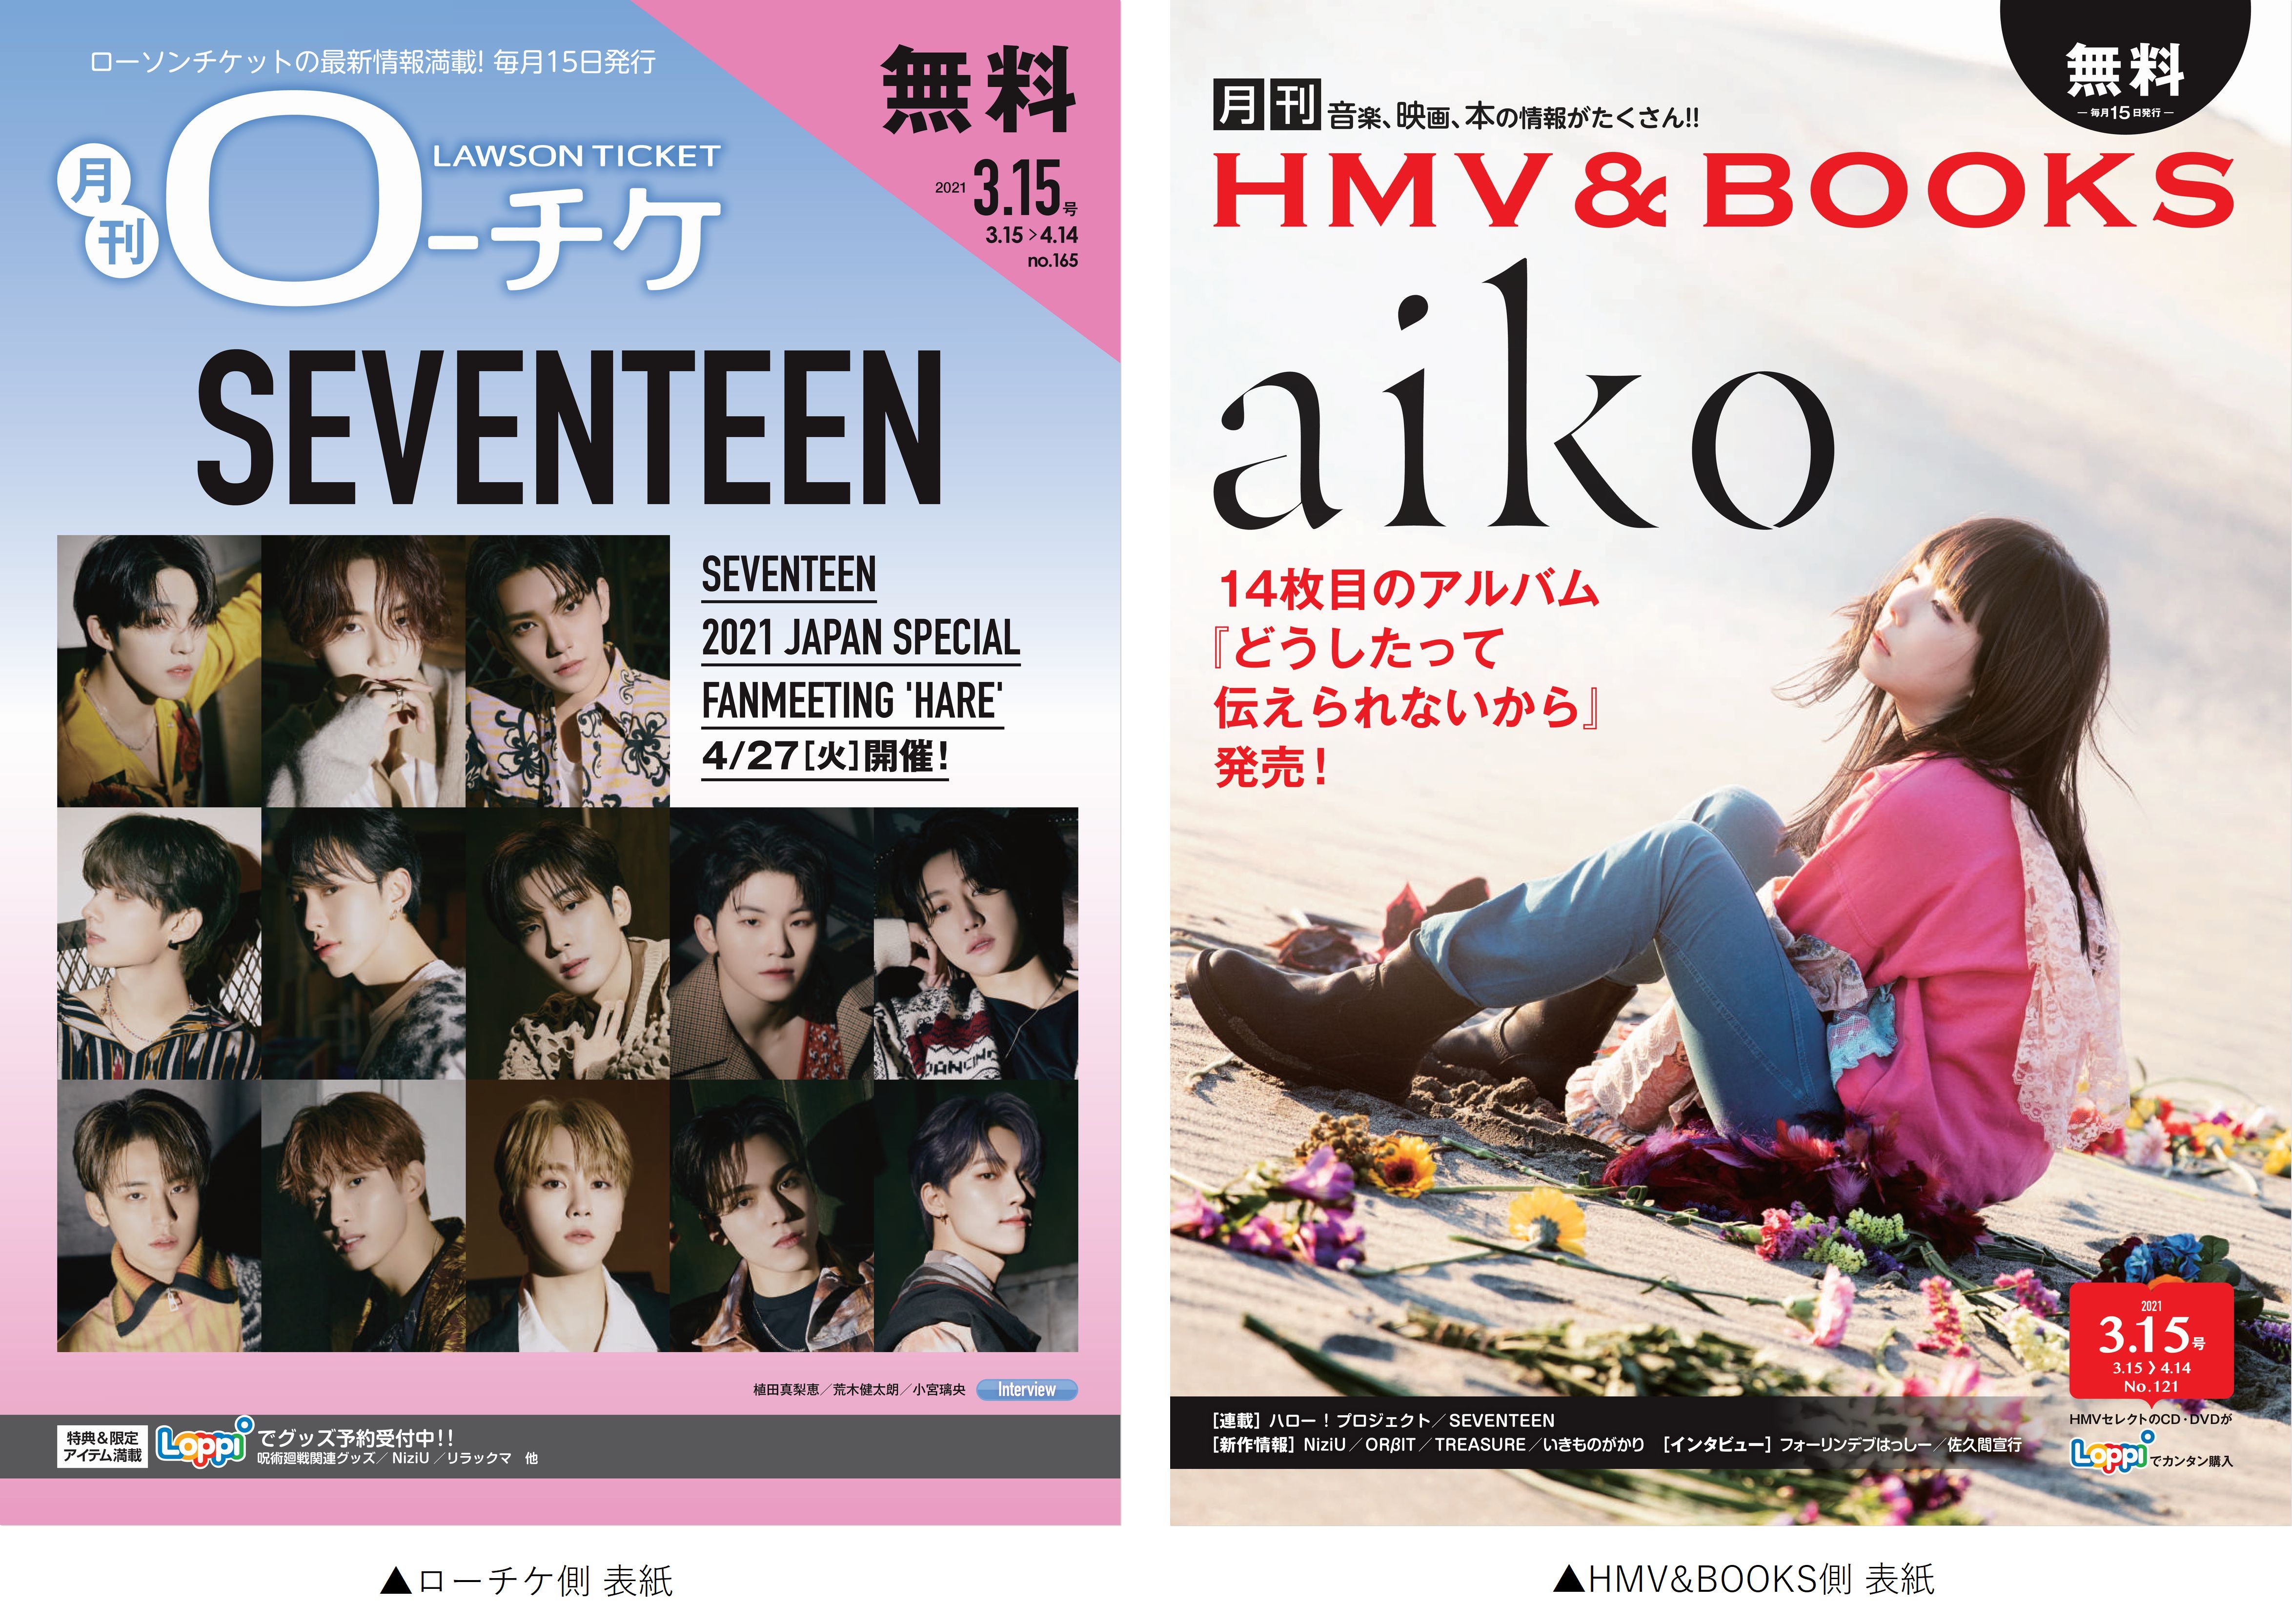 本日発行 フリーペーパー 月刊ローチケ 月刊hmv Books 3月号の表紙 巻頭特集は Seventeen Aiko が登場 株式会社ローソンエンタテインメントのプレスリリース